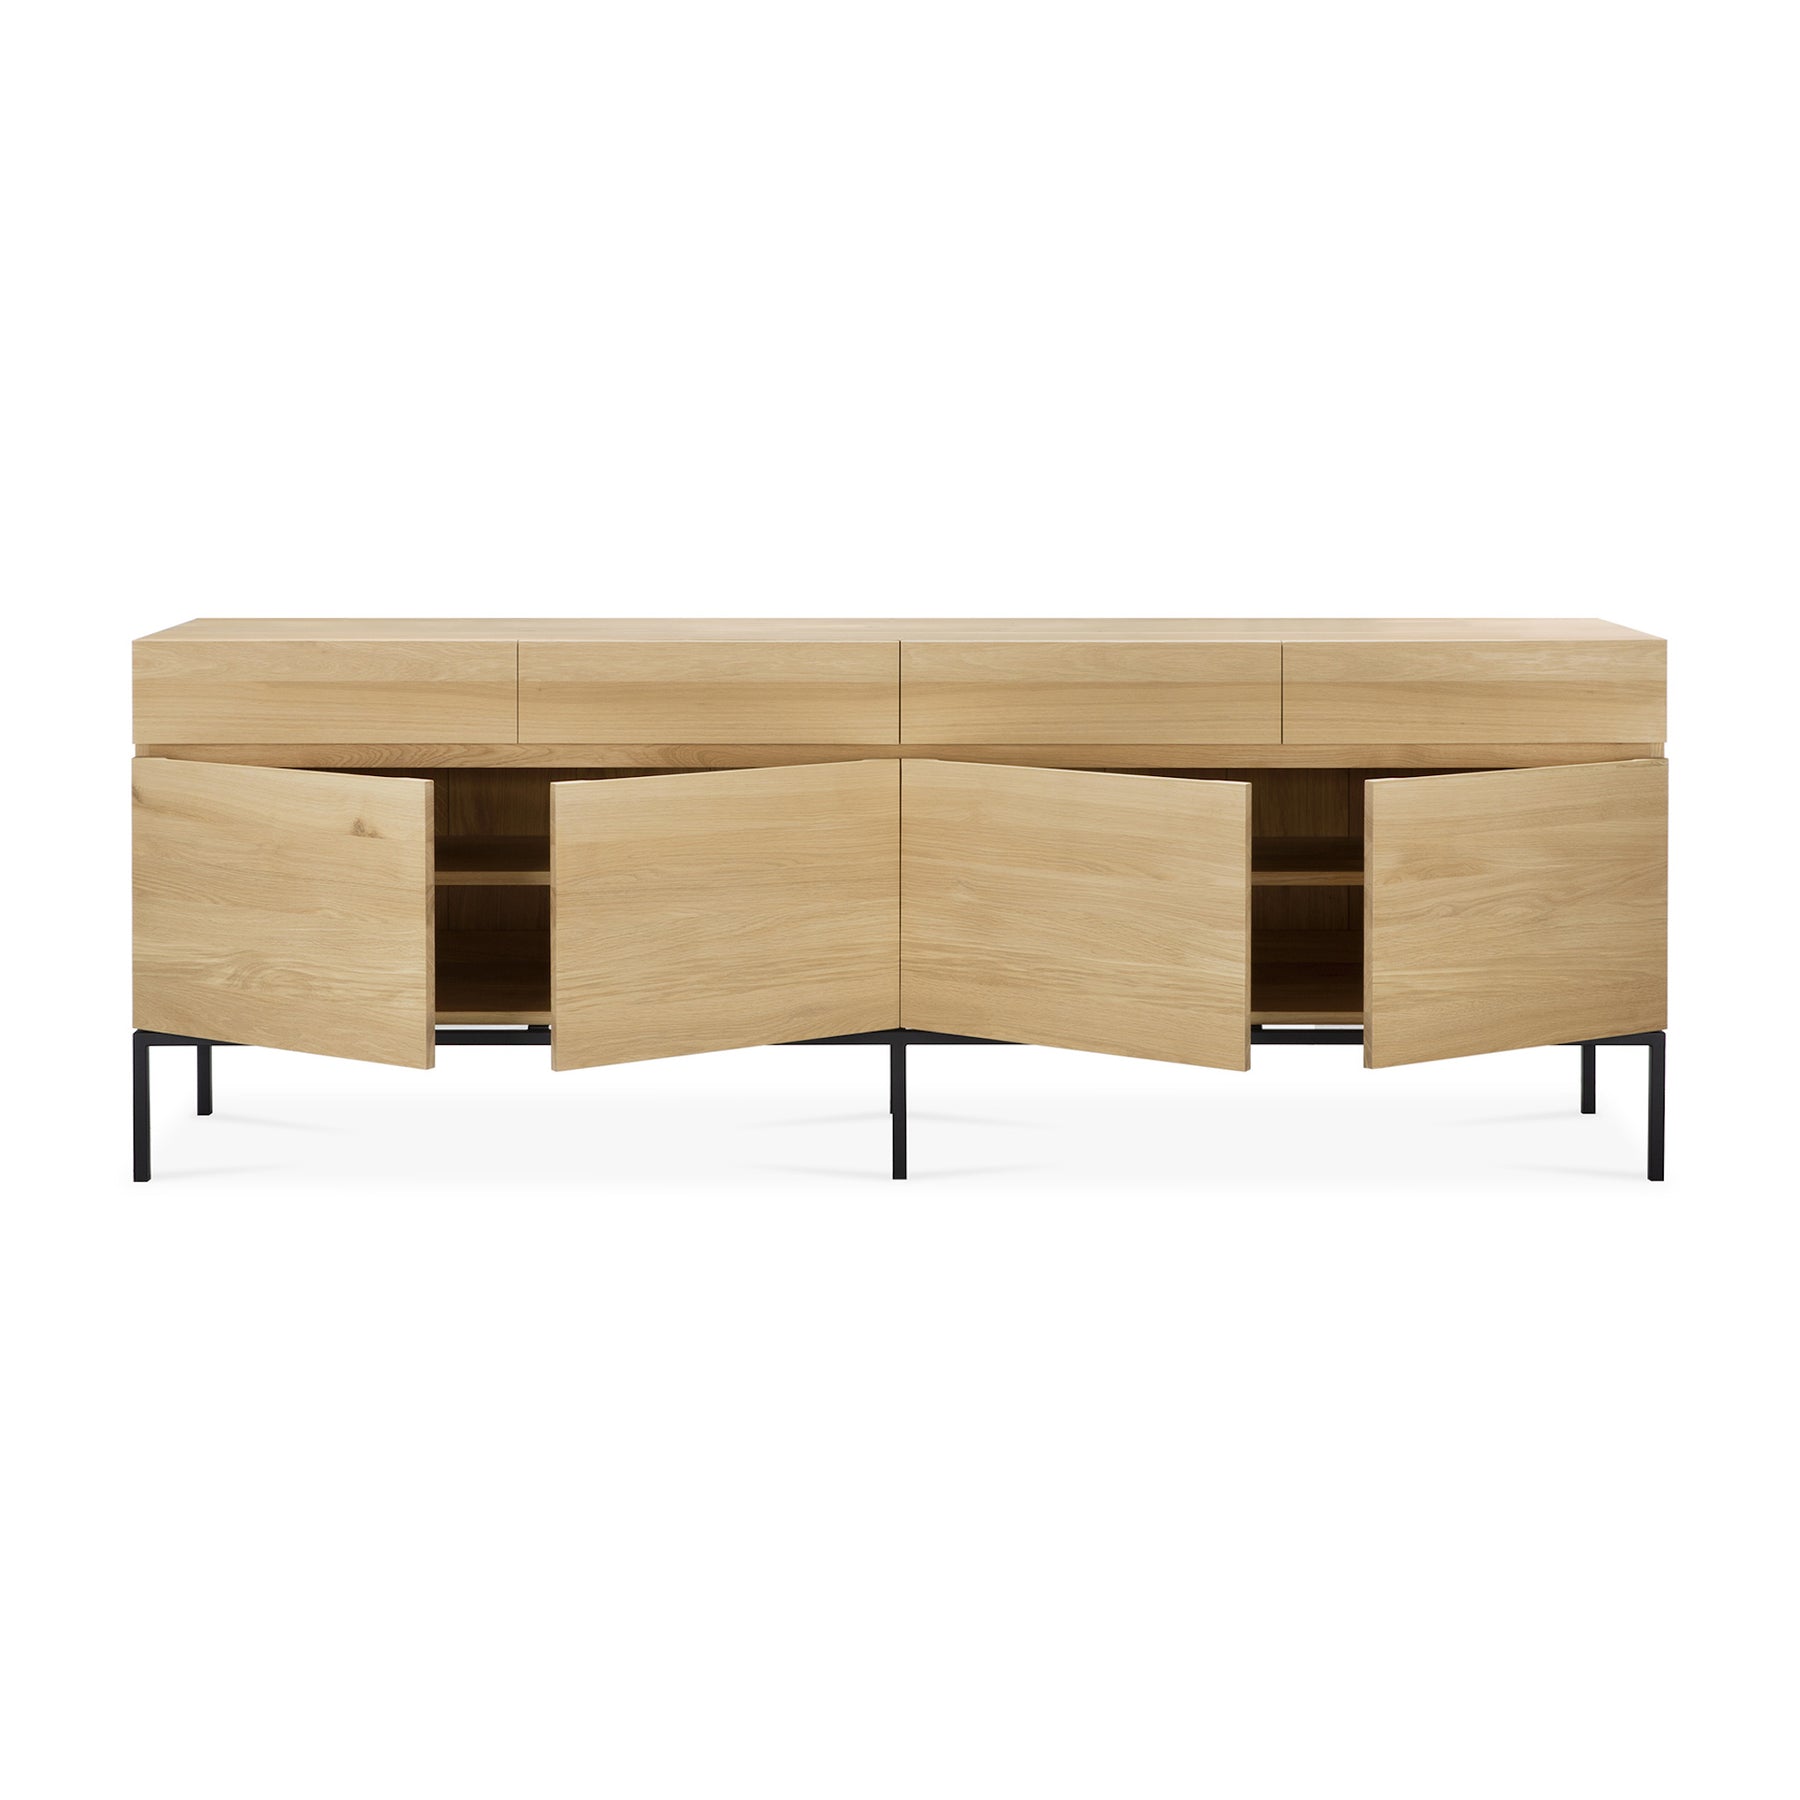 ethnicraft-oak-ligna-sideboard-4-door-cabinets-open-51116